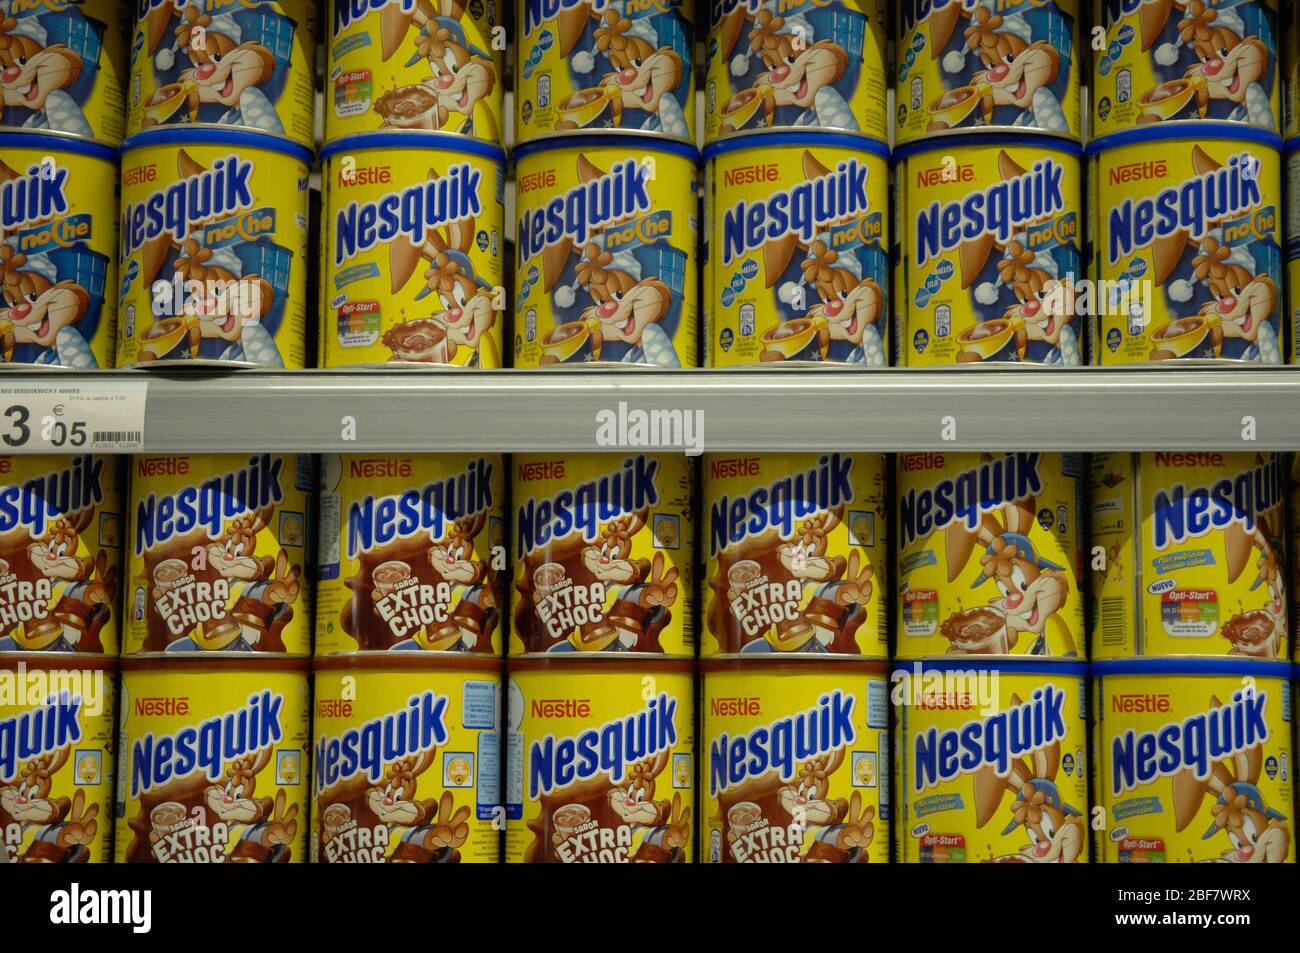 Nestle,Nesquik Stock Photo - Alamy